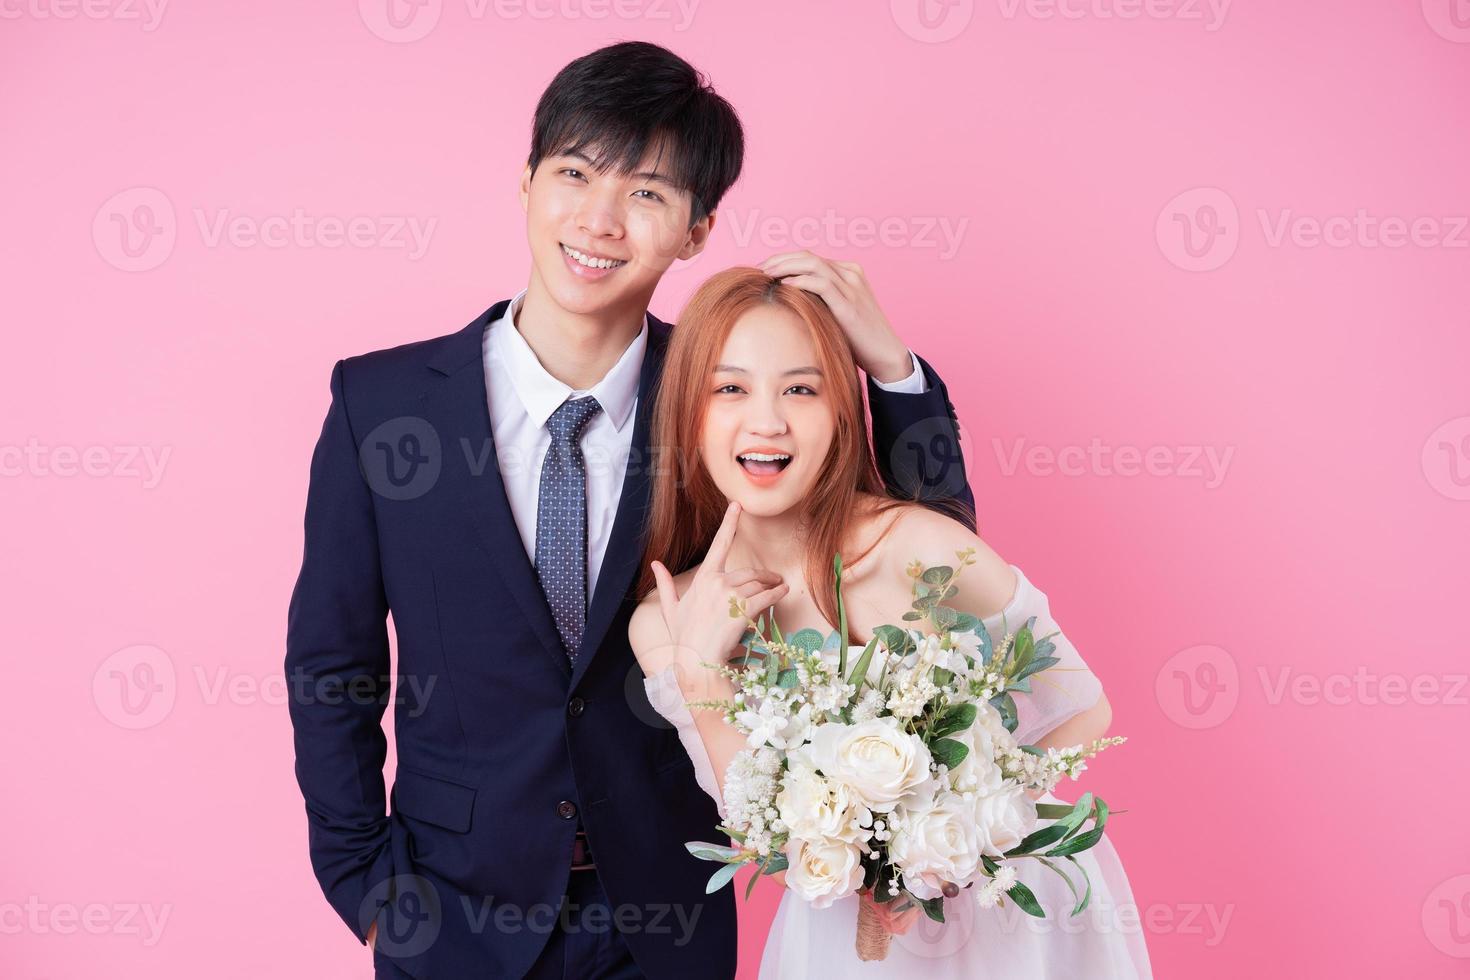 junge asiatische braut und bräutigam posieren auf rosa hintergrund foto